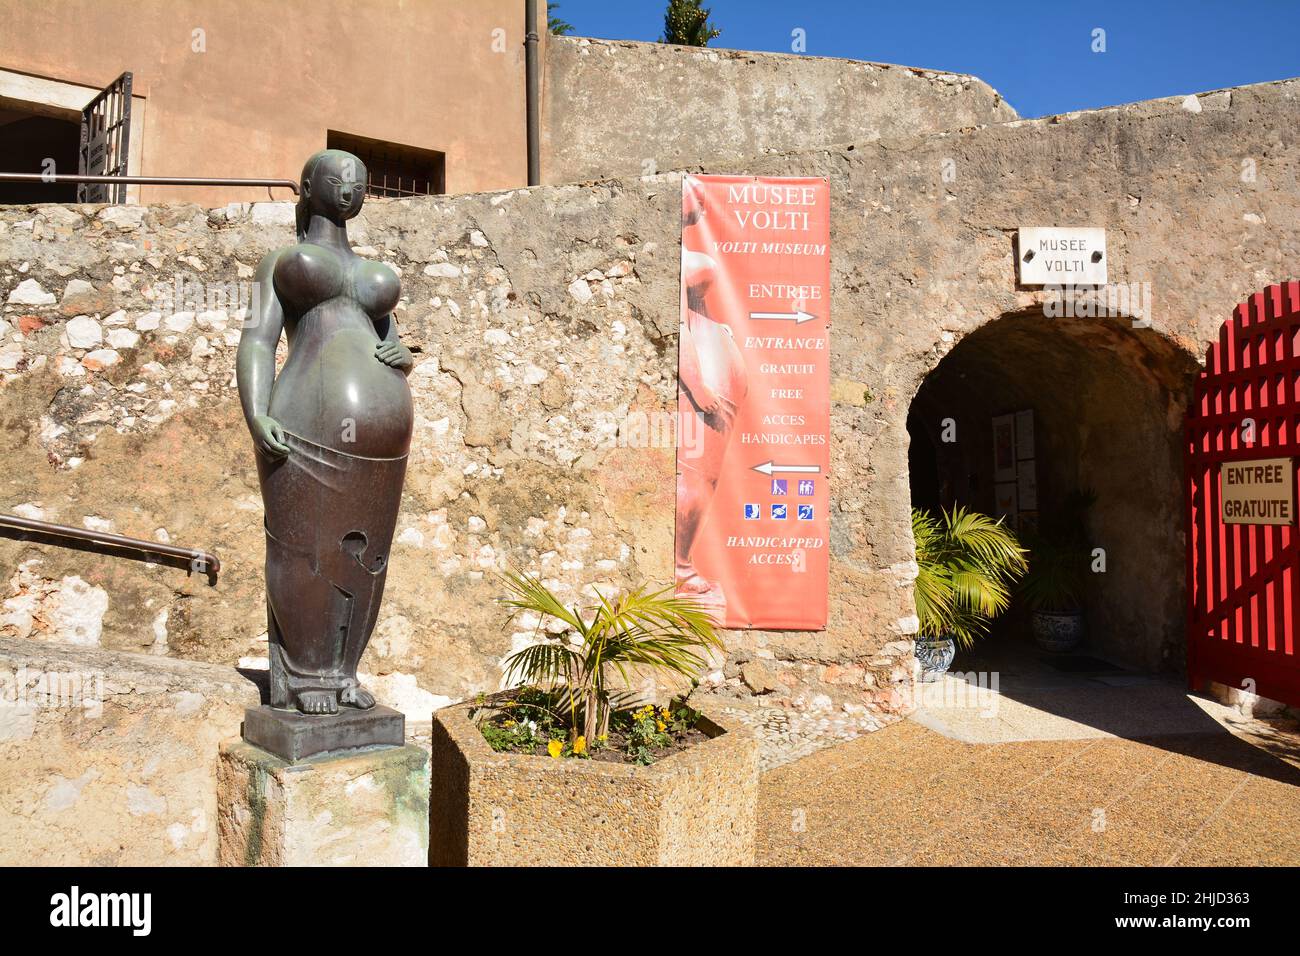 Francia, costa azzurra, Villefranche sur mer, il museo di He Volti nella cittadella ospita statue di bronzo donne in curve sensuali dello scultore A. Volti. Foto Stock